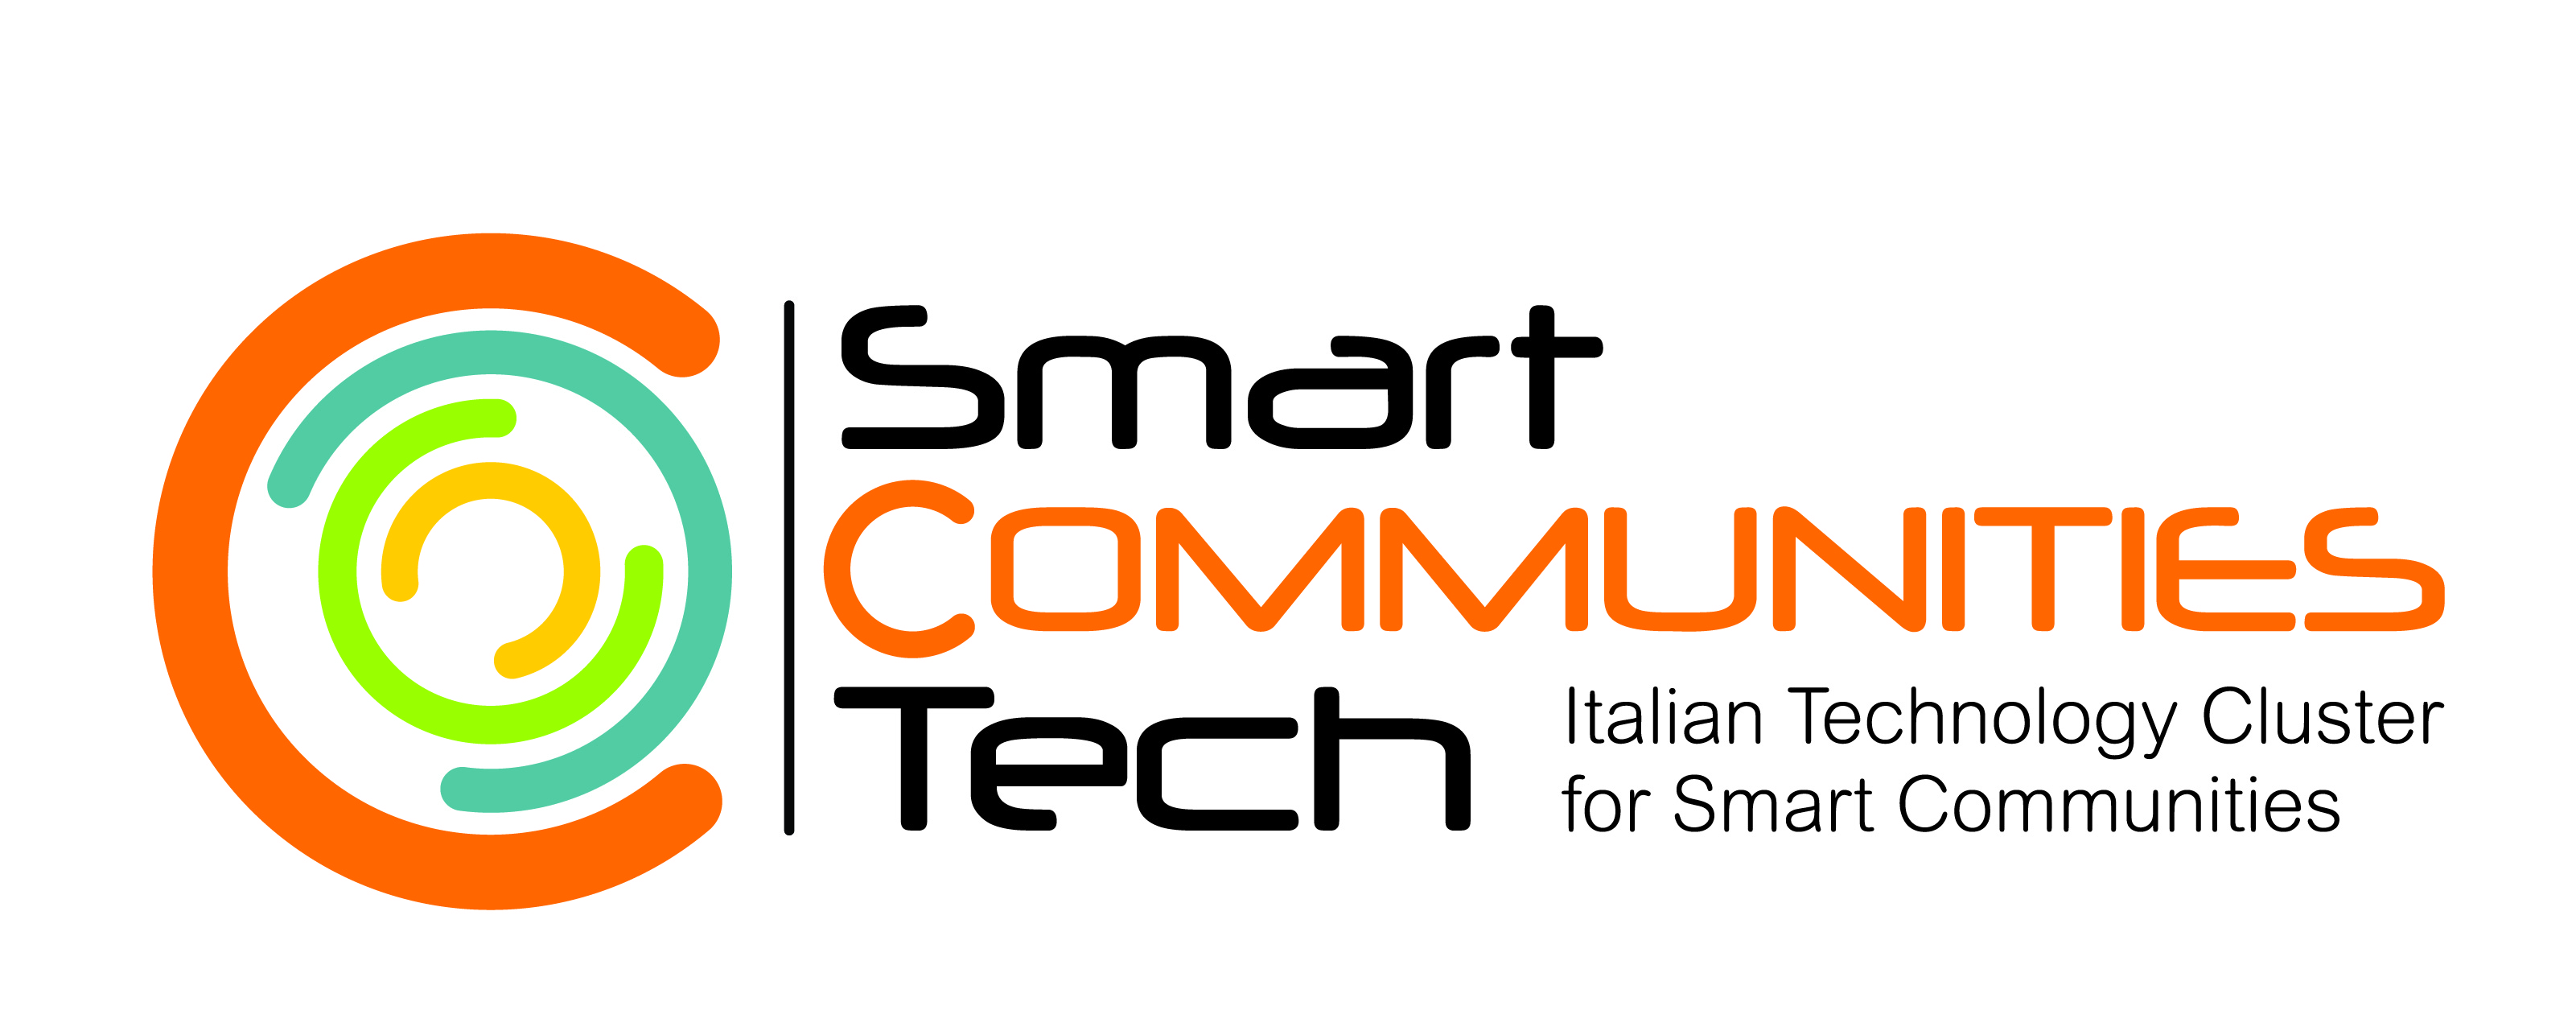 SmartCommunitiesTech_logo.jpg